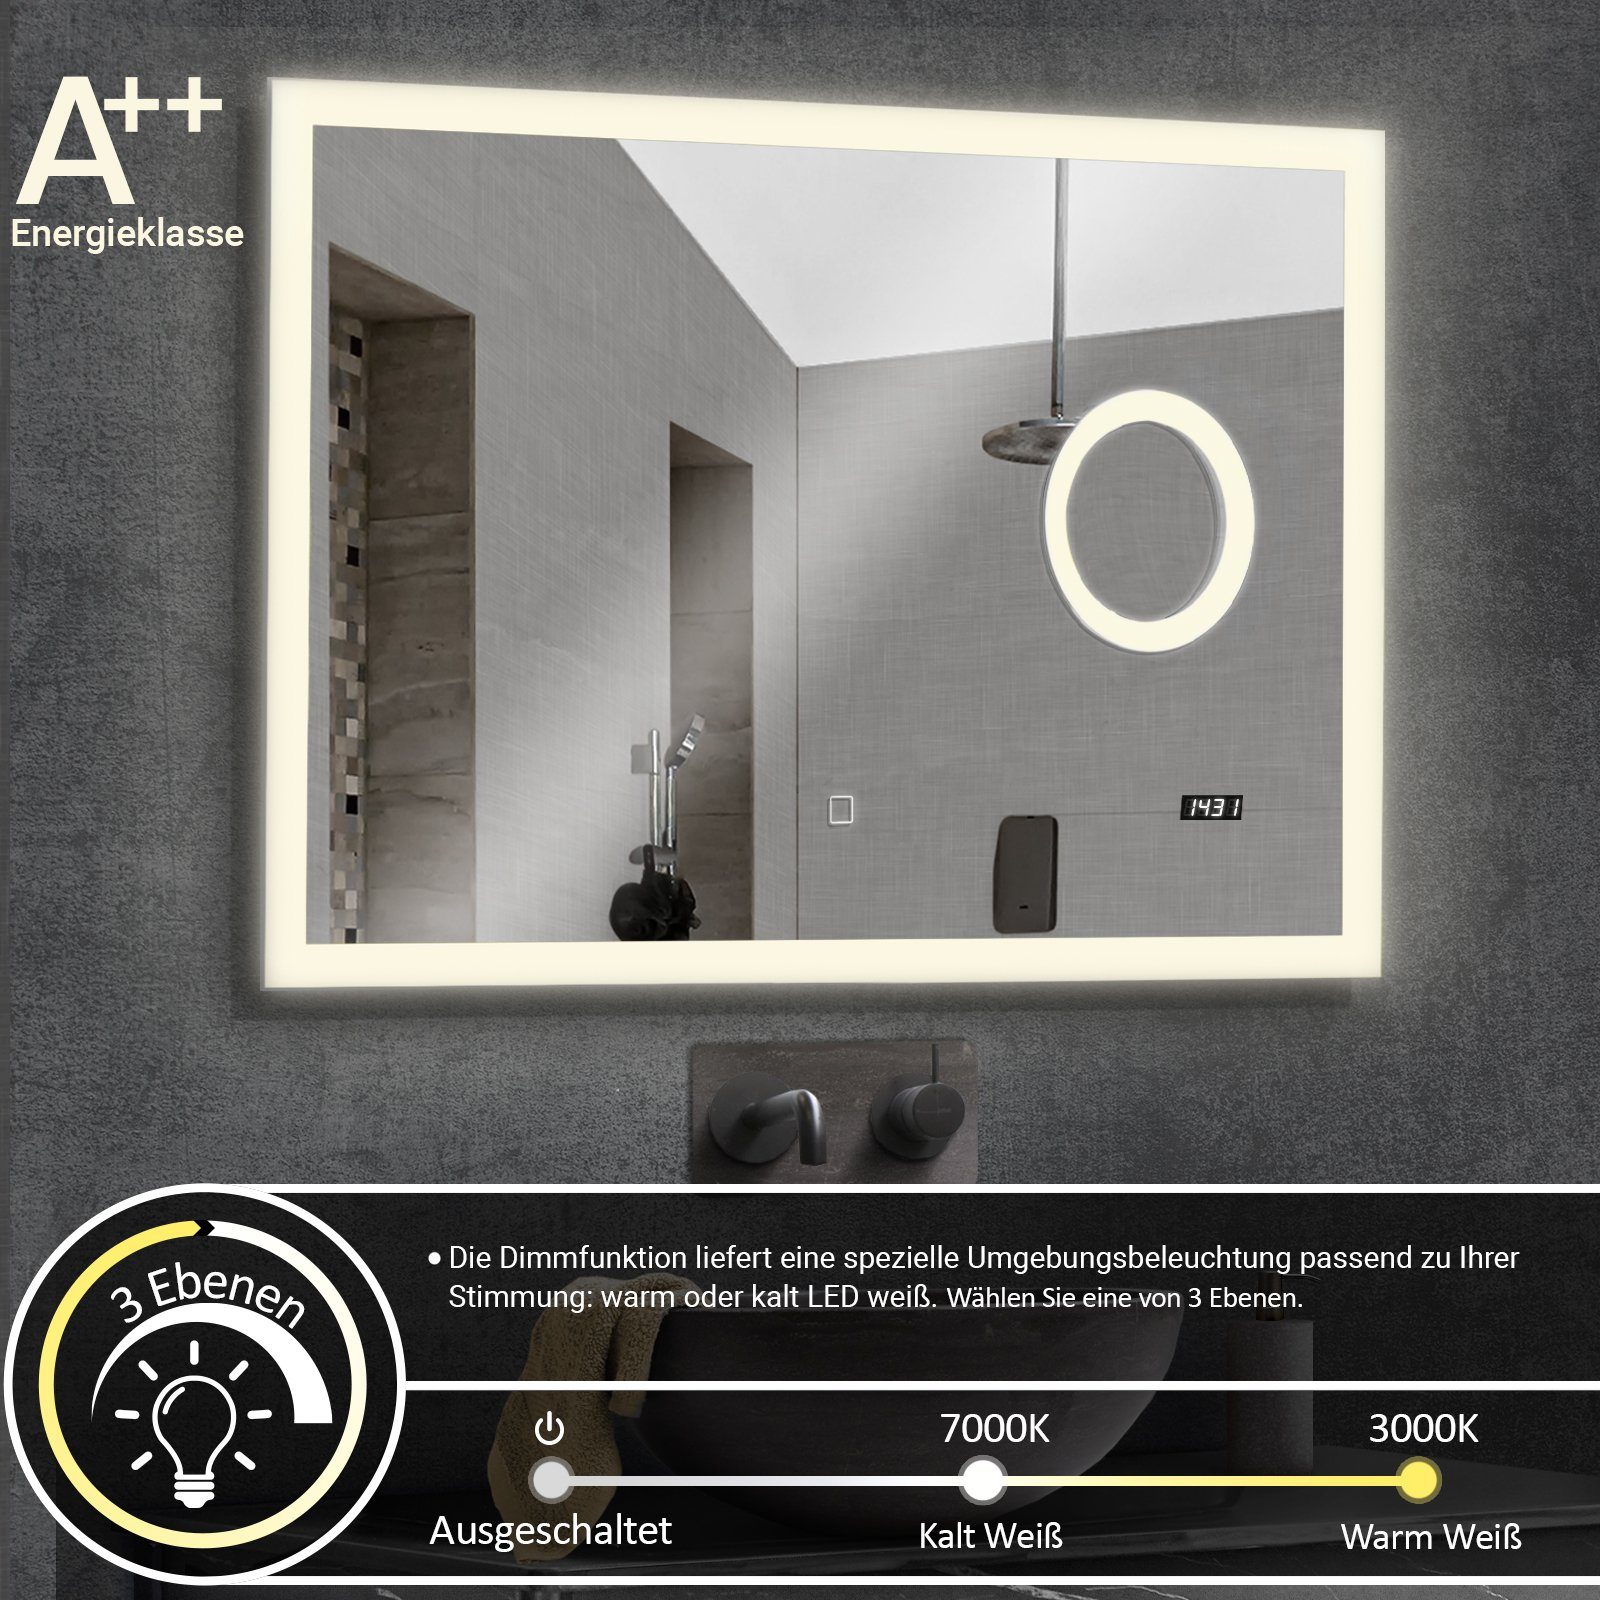 Badezimmerspiegelschrank Uhr Badspiegel & - Badezimmerspiegel Digitaluhr - Touchschalter, mit Aquamarin LED Kosmetikspiegel